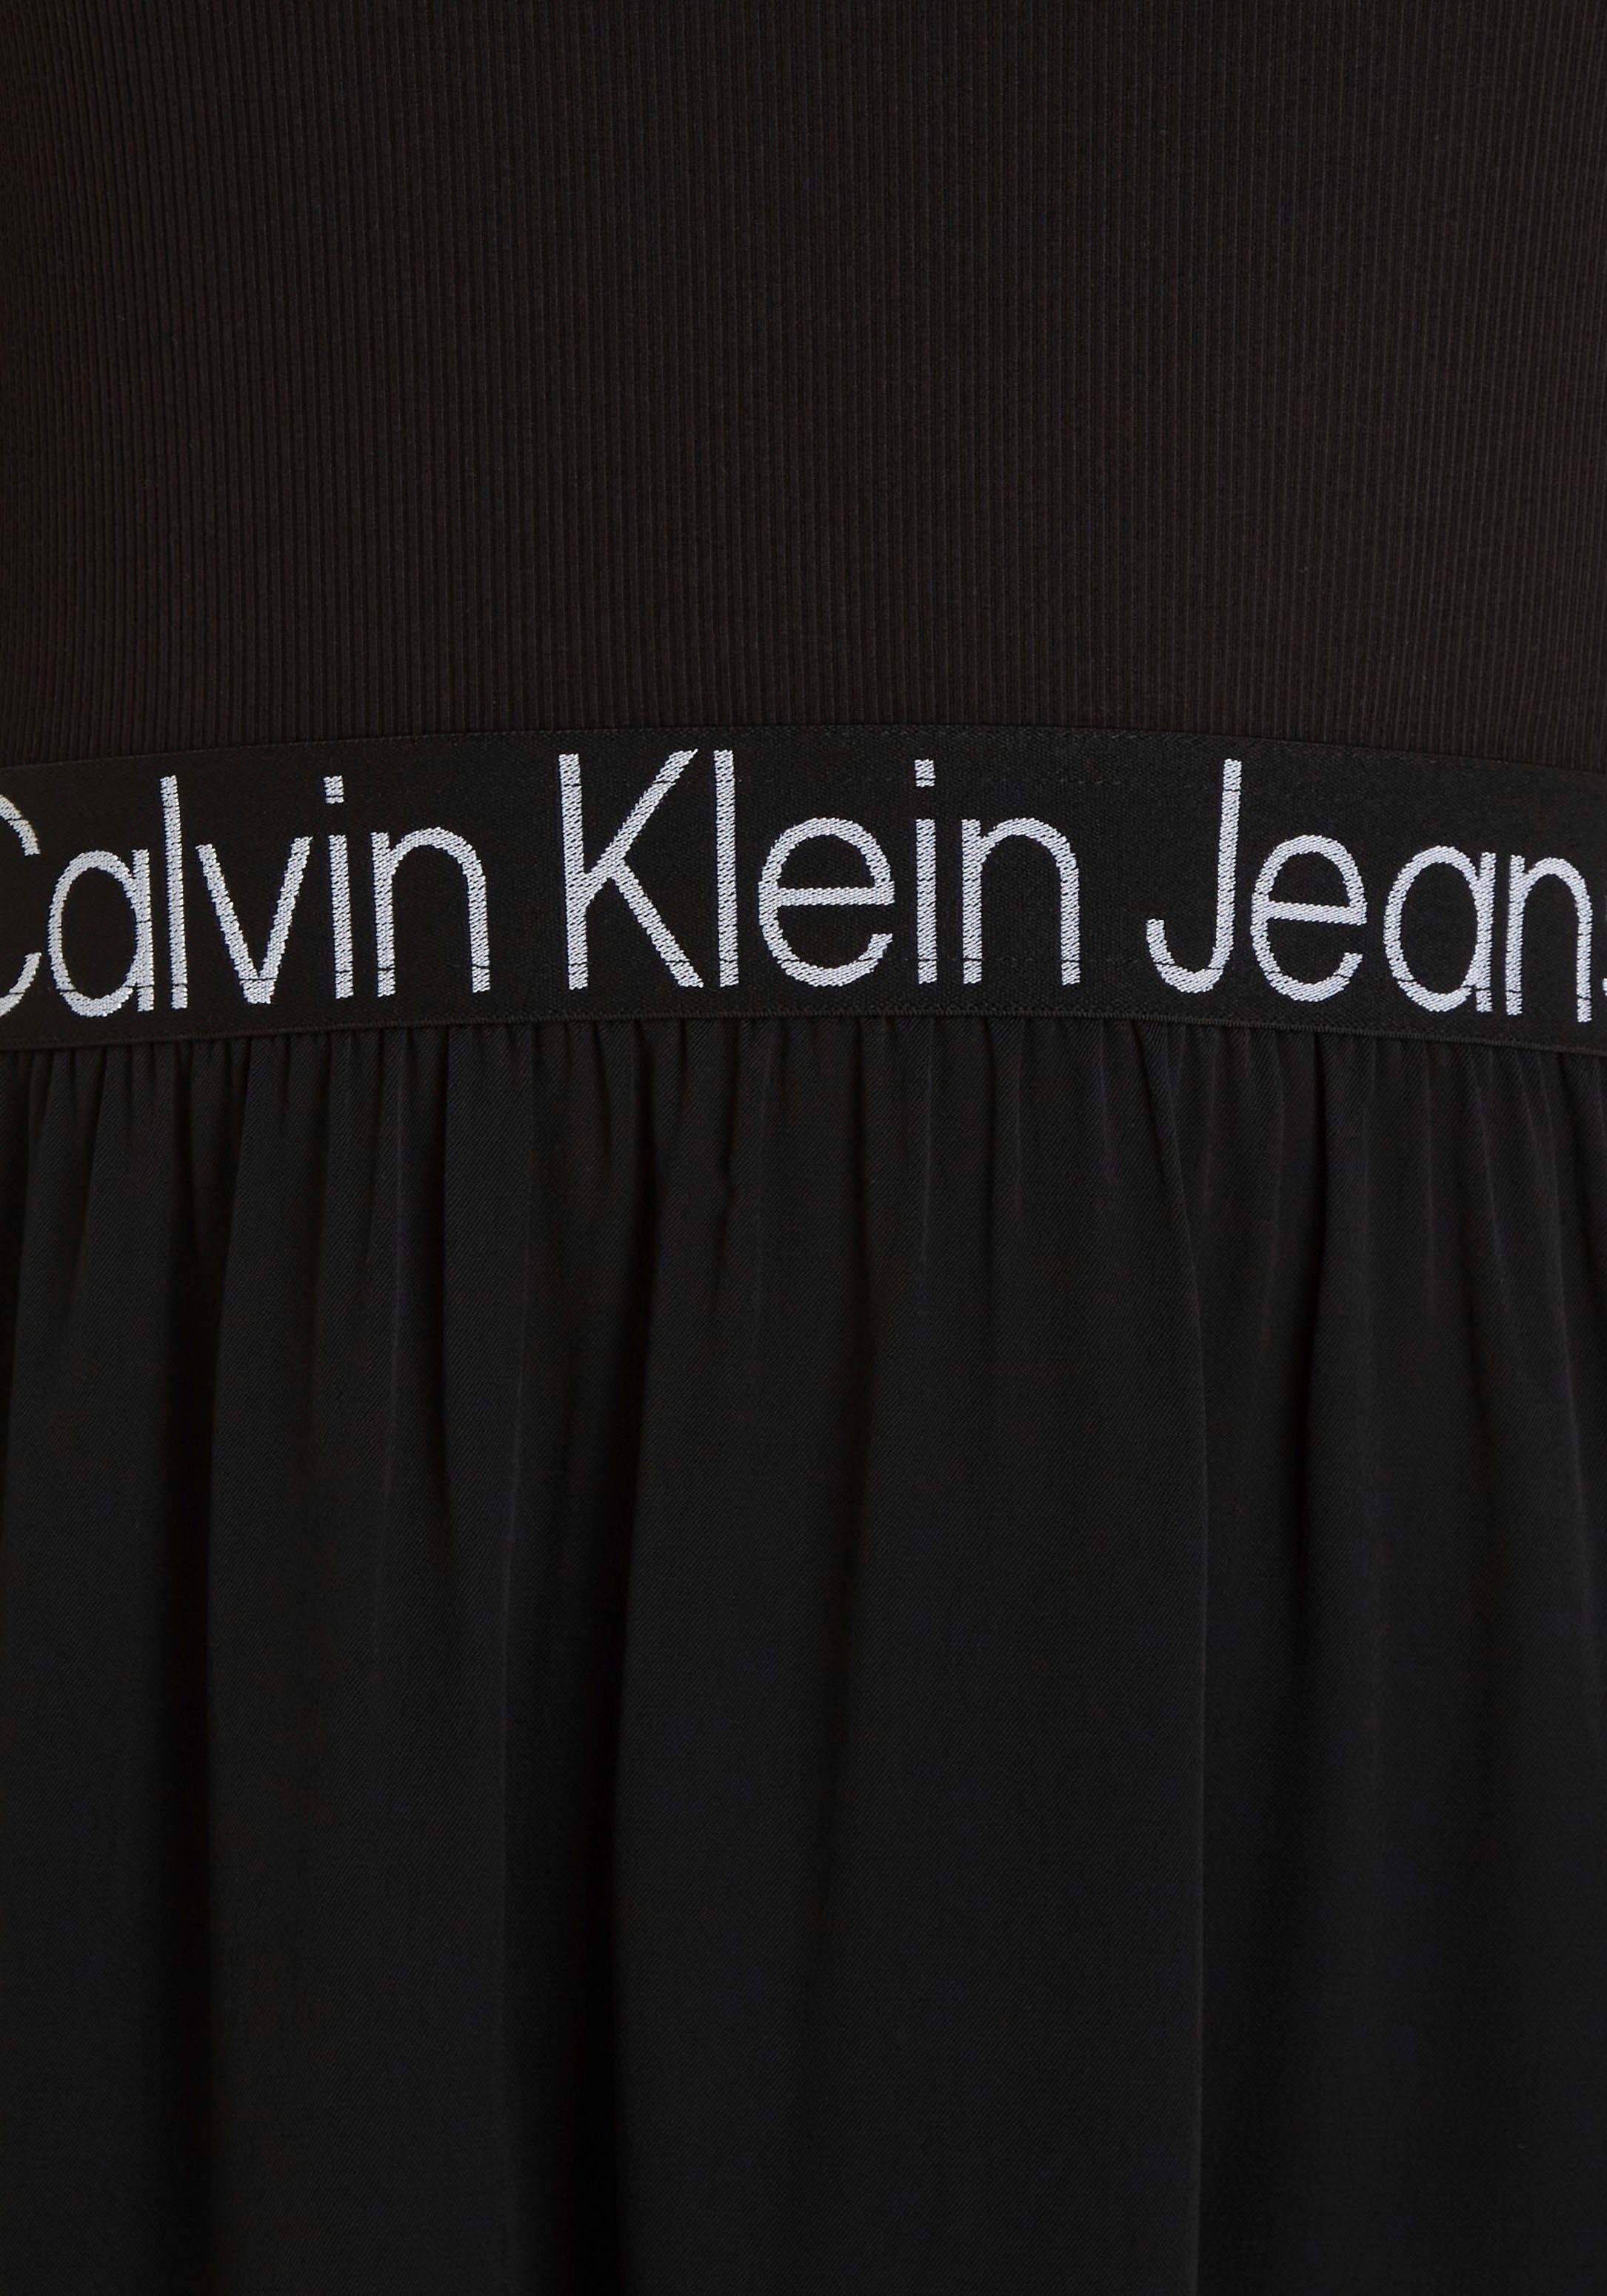 Calvin Klein Jeans 2-in-1-Kleid Materialmix im schwarz